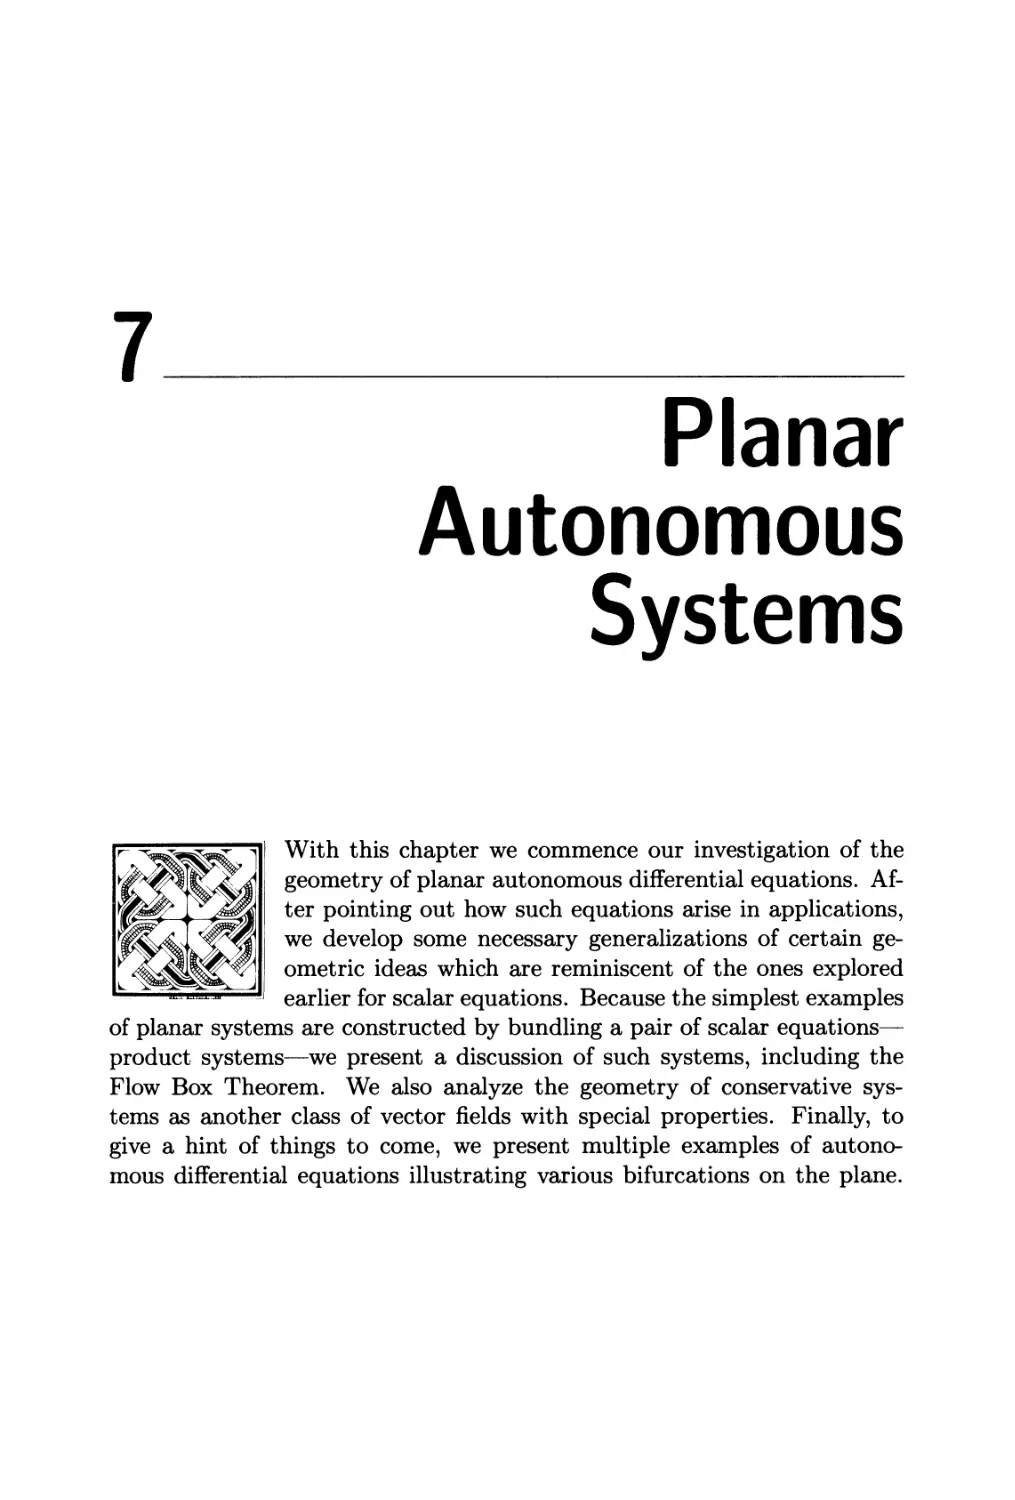 Chapter 7. Planar Autonomous Systems